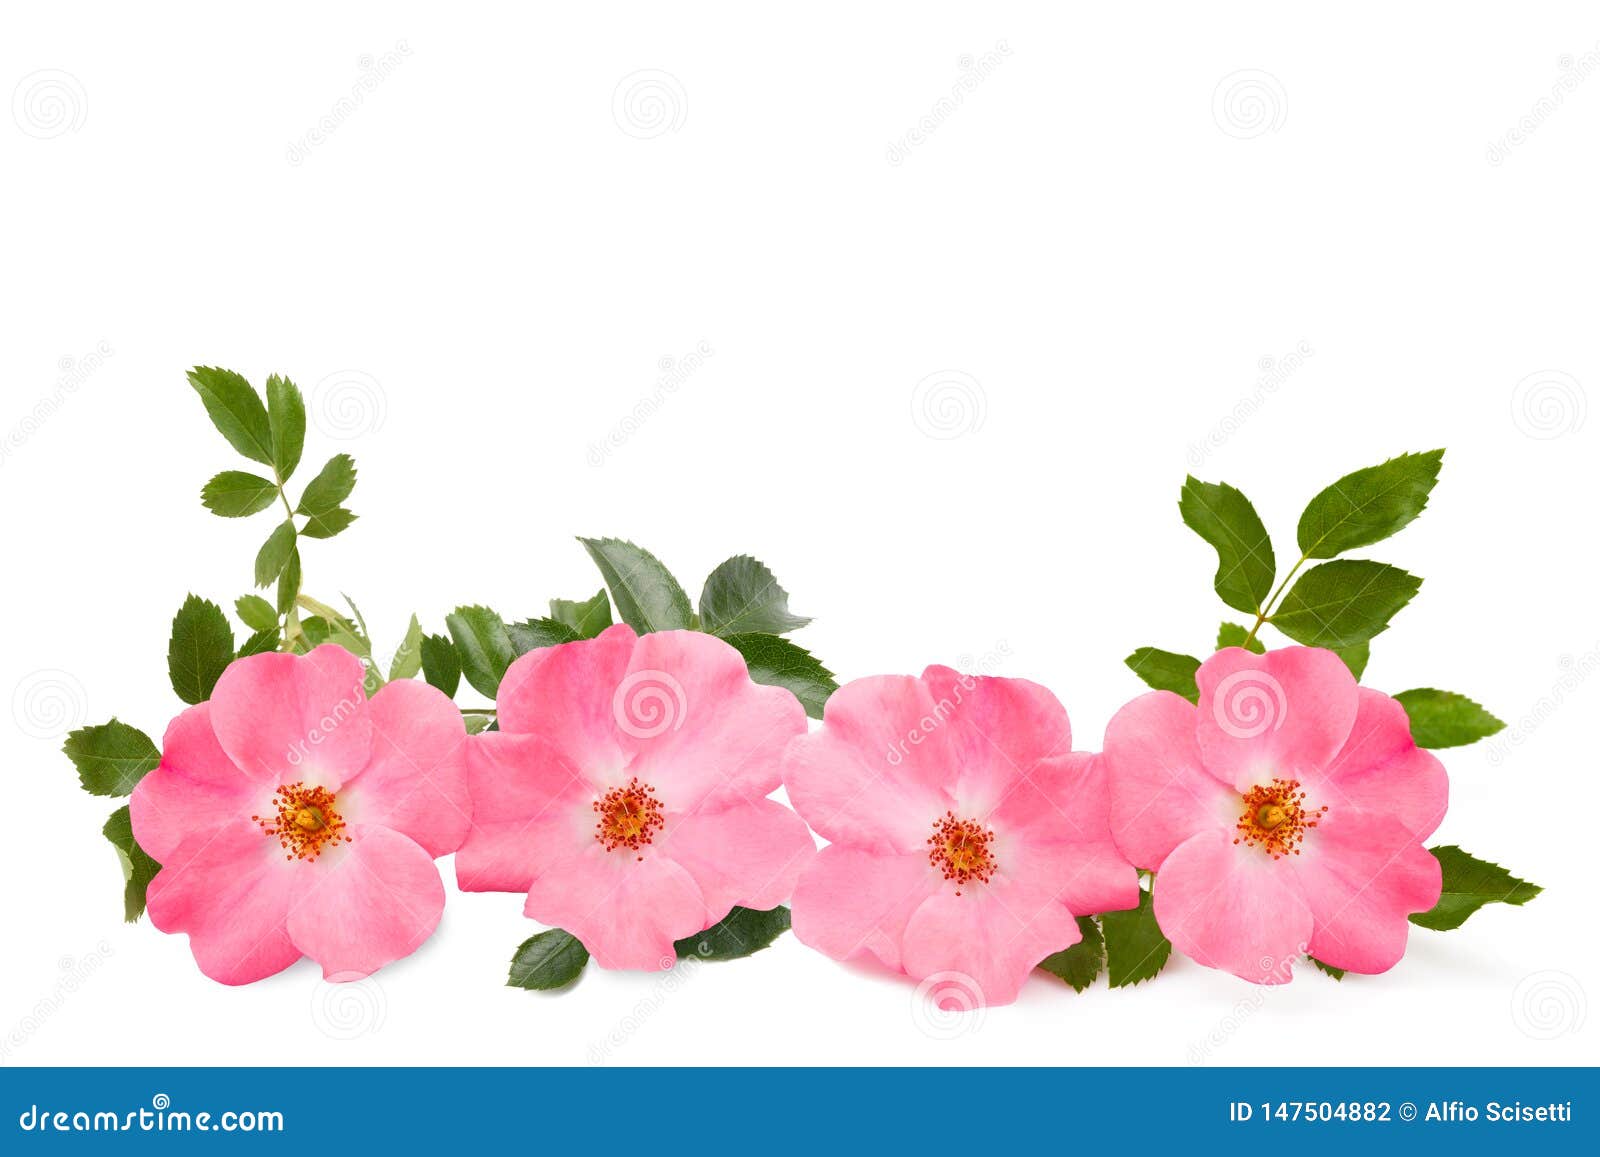 犬蔷薇库存照片 图片包括有查出 草本 颜色 开花 花瓣 叶子 背包 绽放 玫瑰